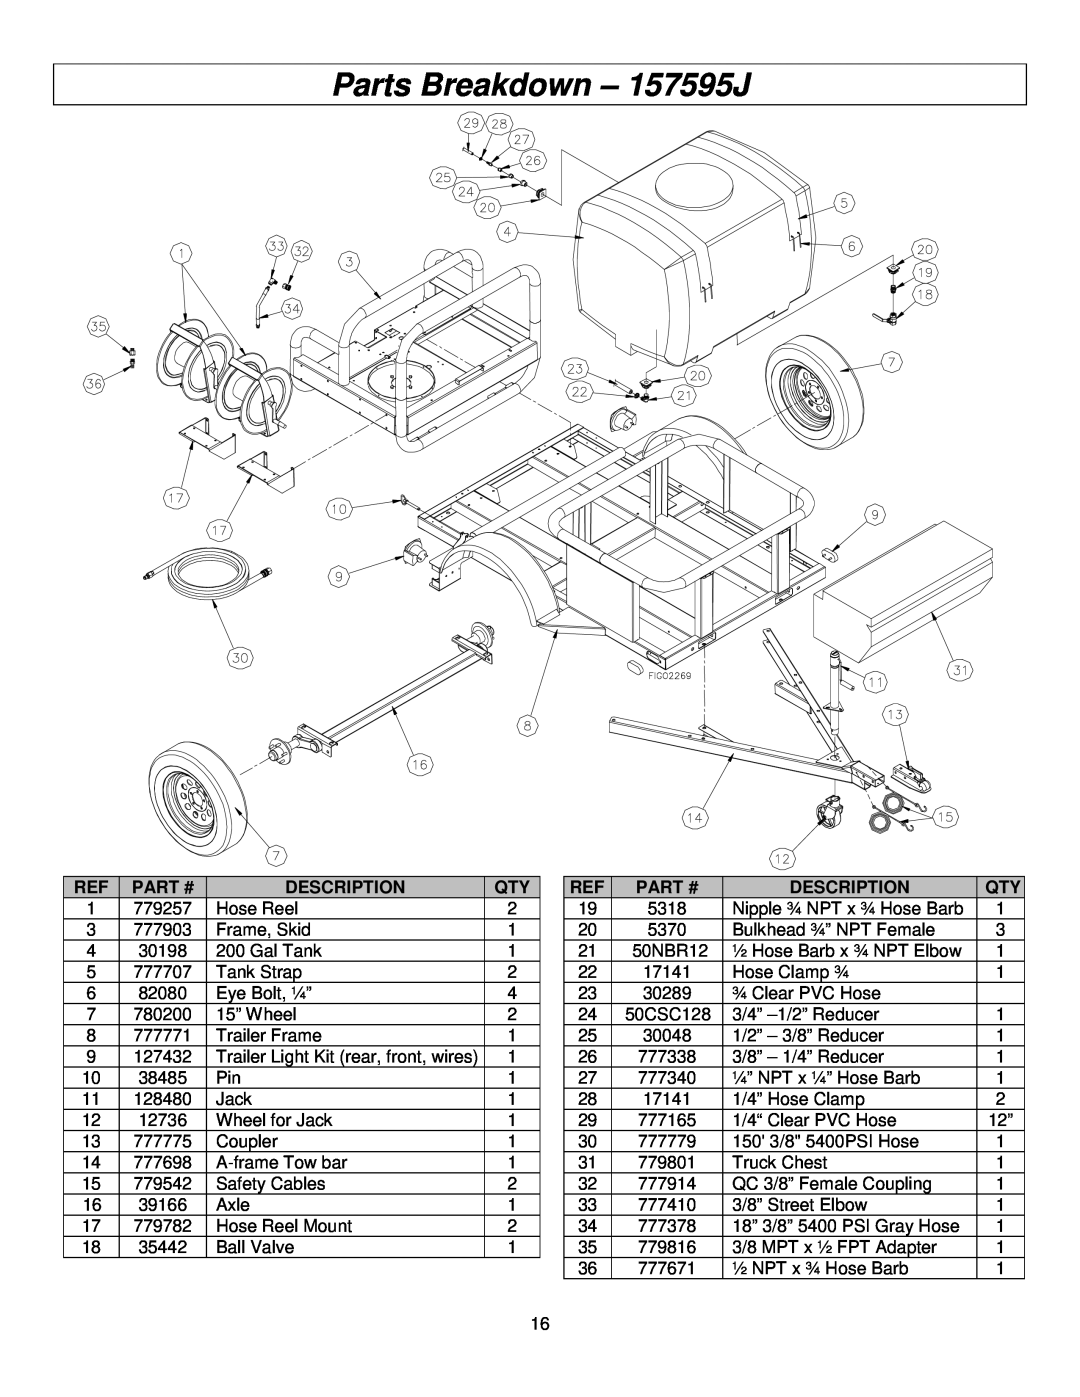 Panasonic M157594J specifications Parts Breakdown - 157595J, Part #, Description 